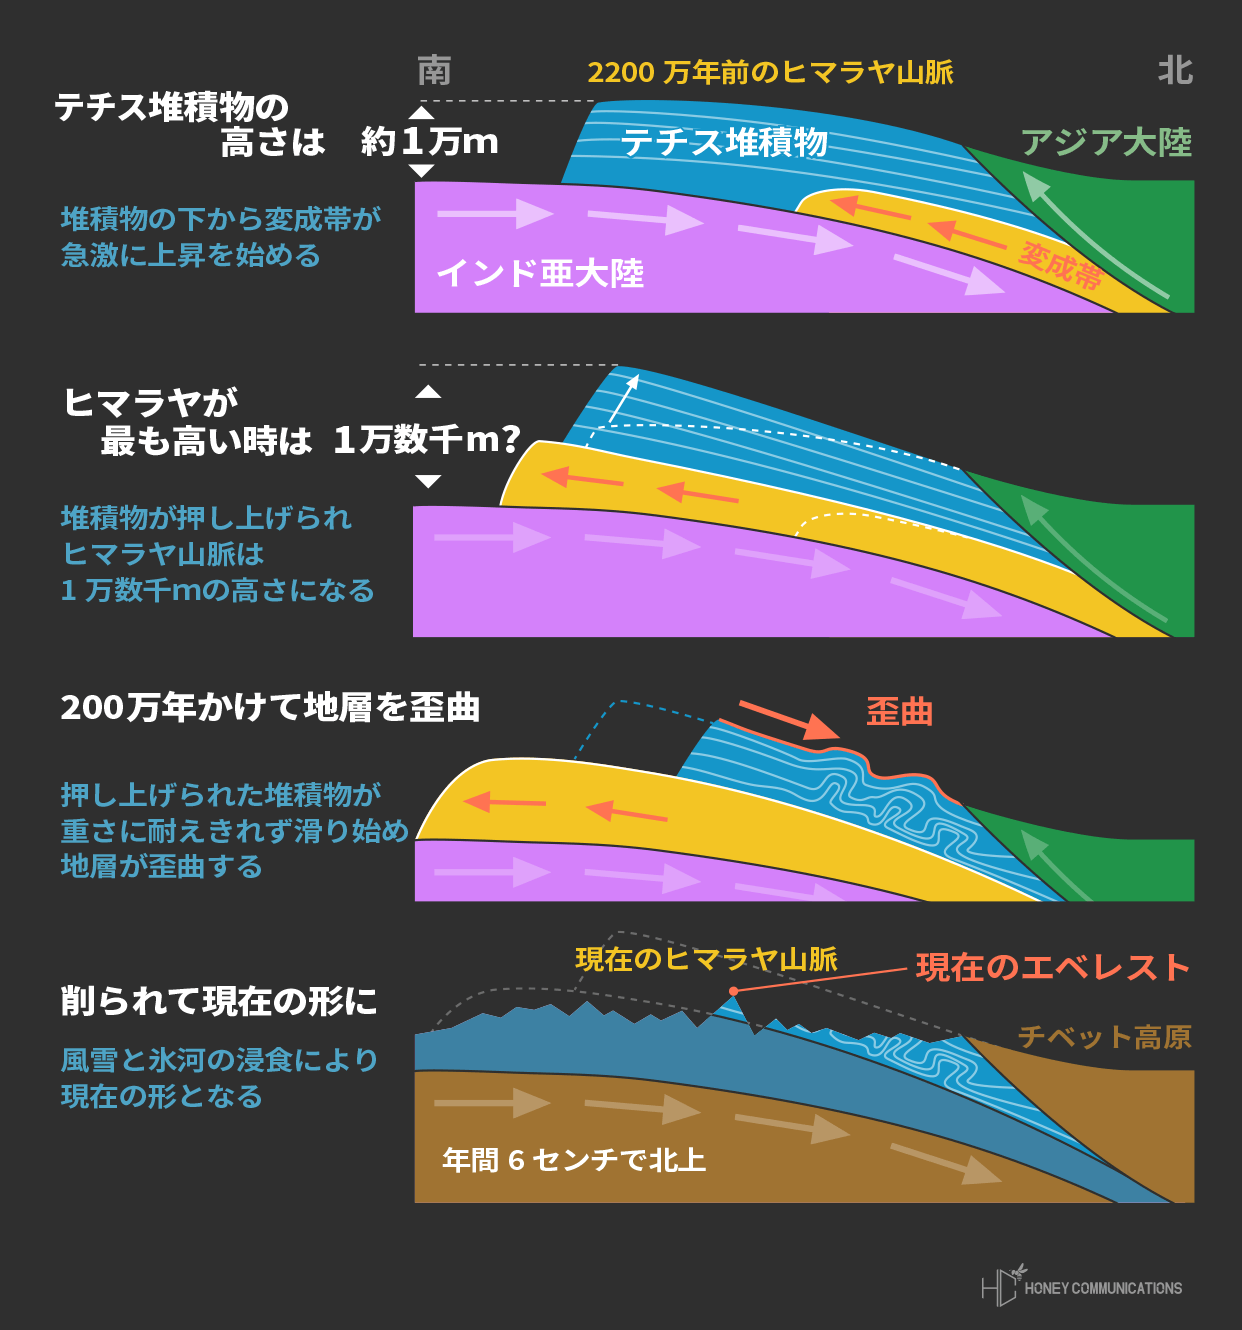 日本一わかりやすい8000m峰14座完全データ | プロ登山家 竹内洋岳 公式